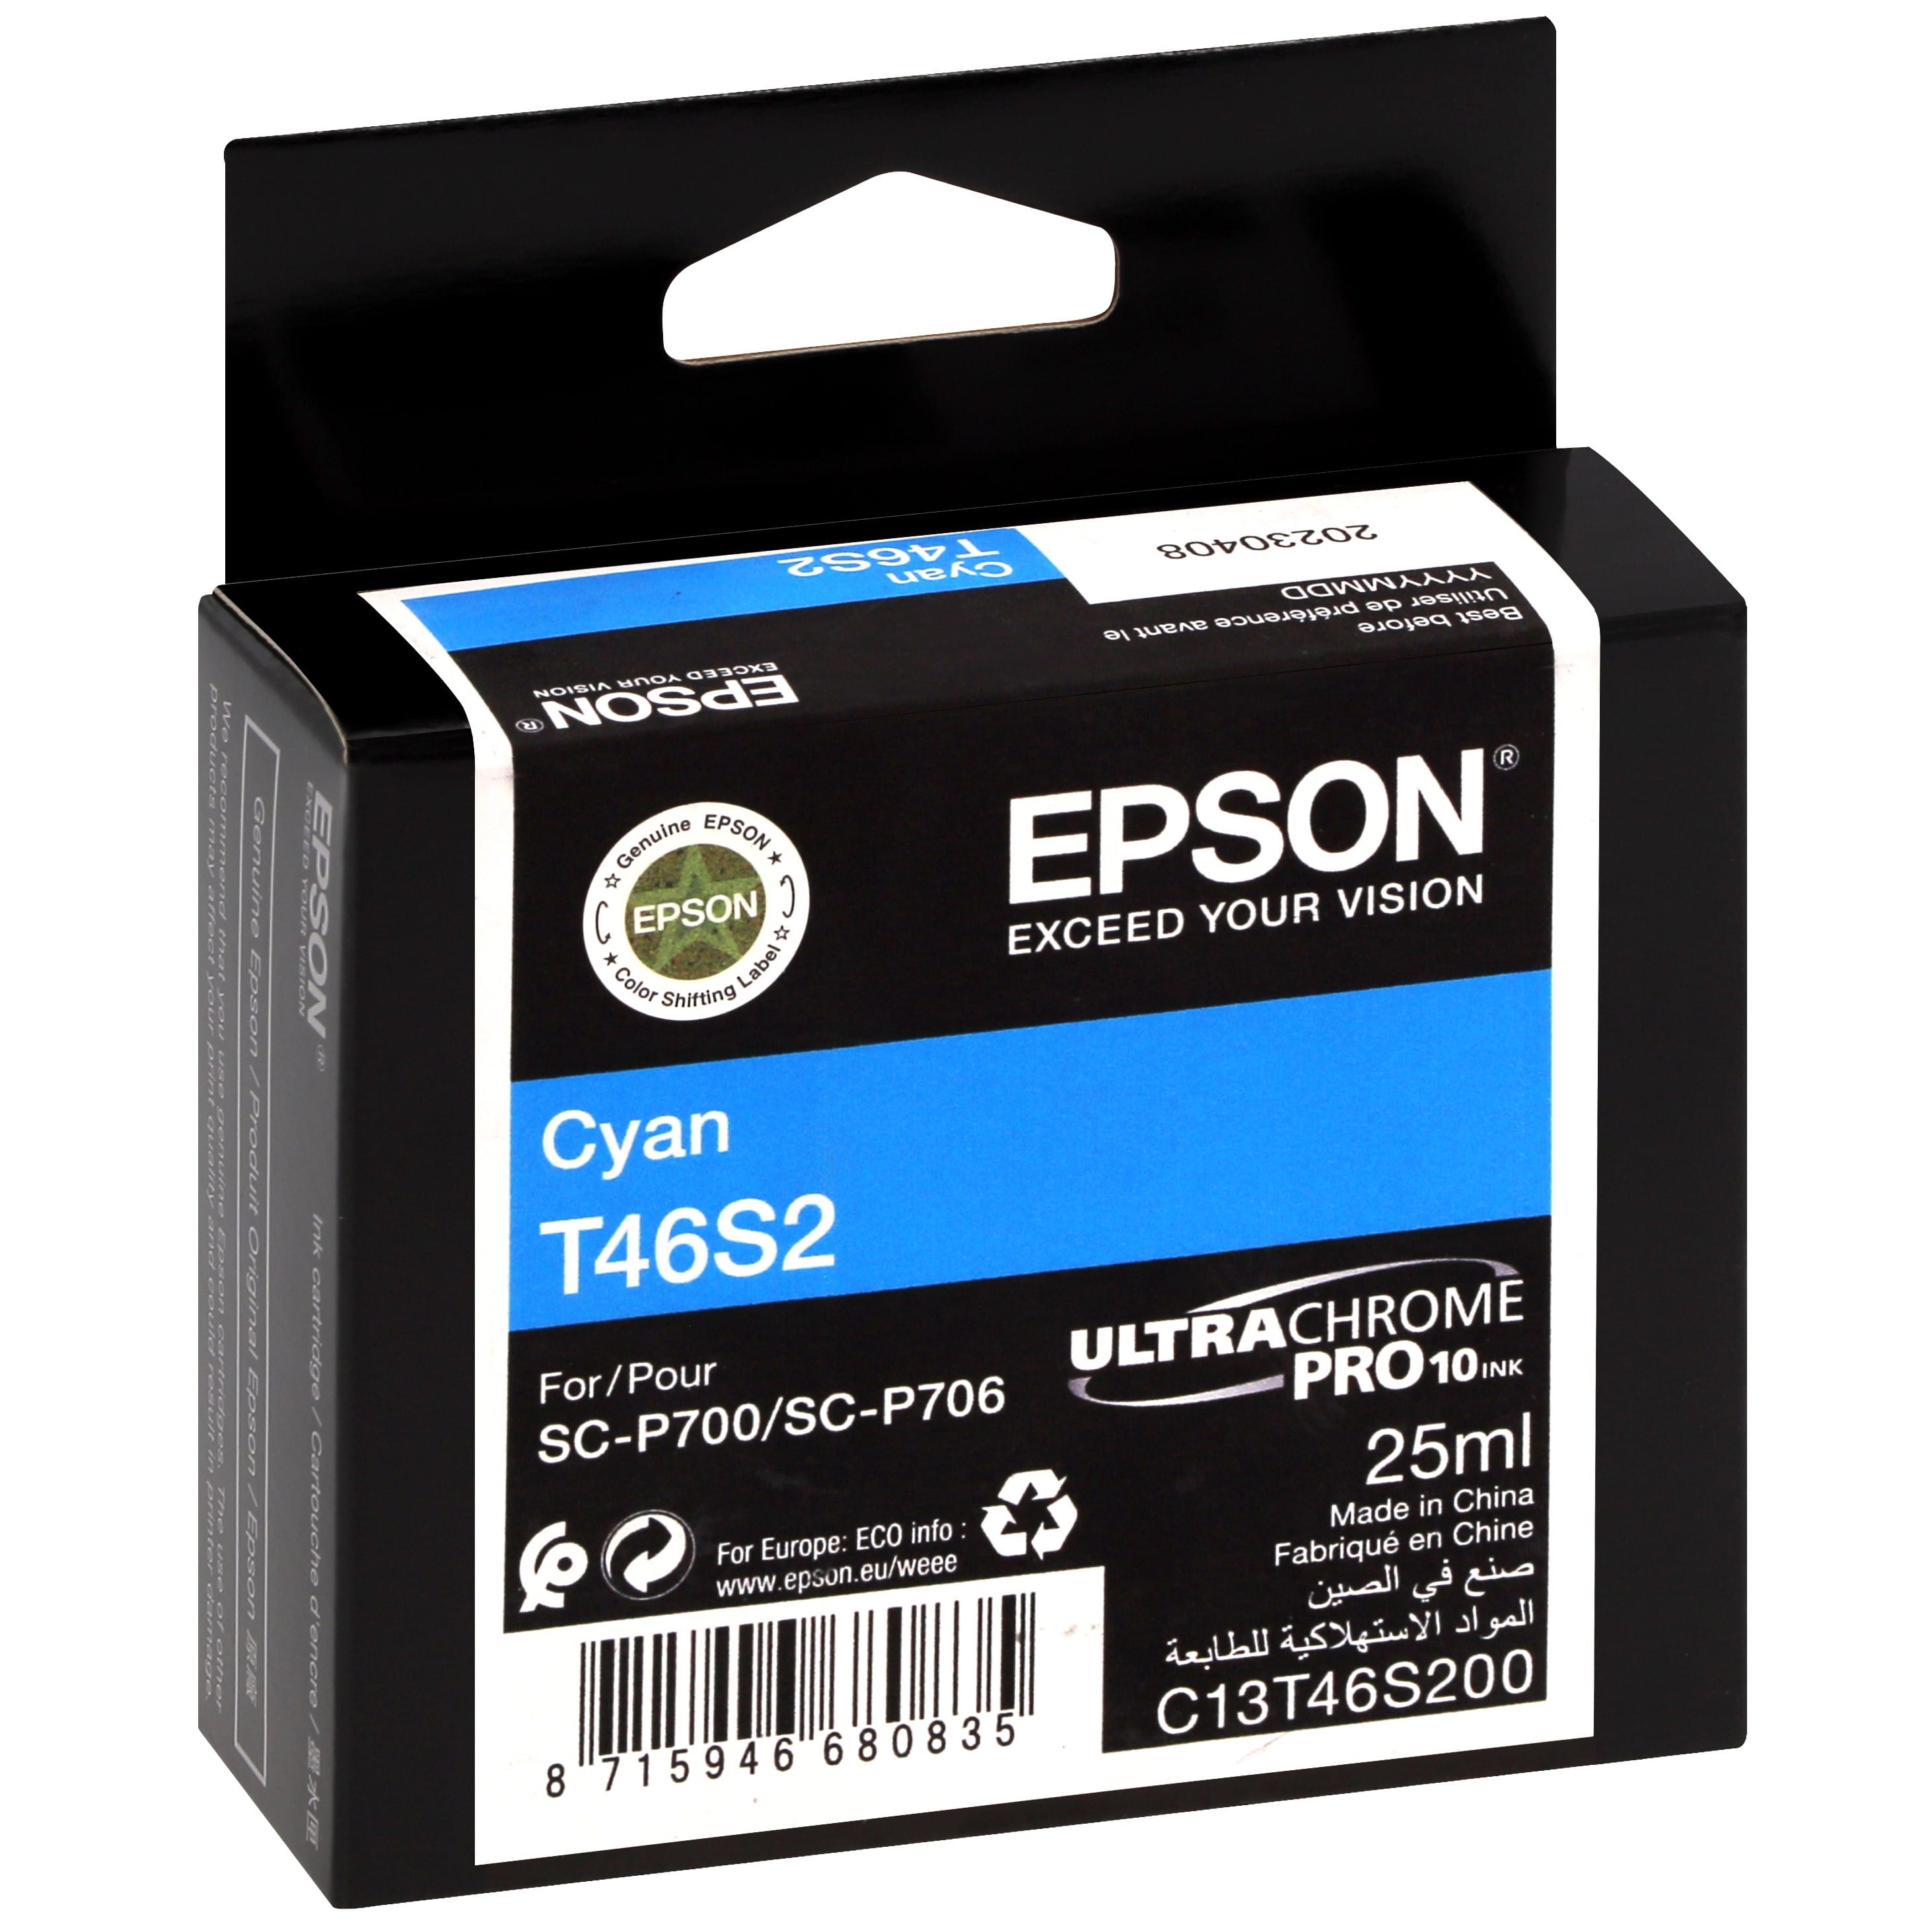 EPSON - Cartouche d'encre traceur UltraChrome Pro 10 SC-P700 - Cyan - 25ml - T46S2